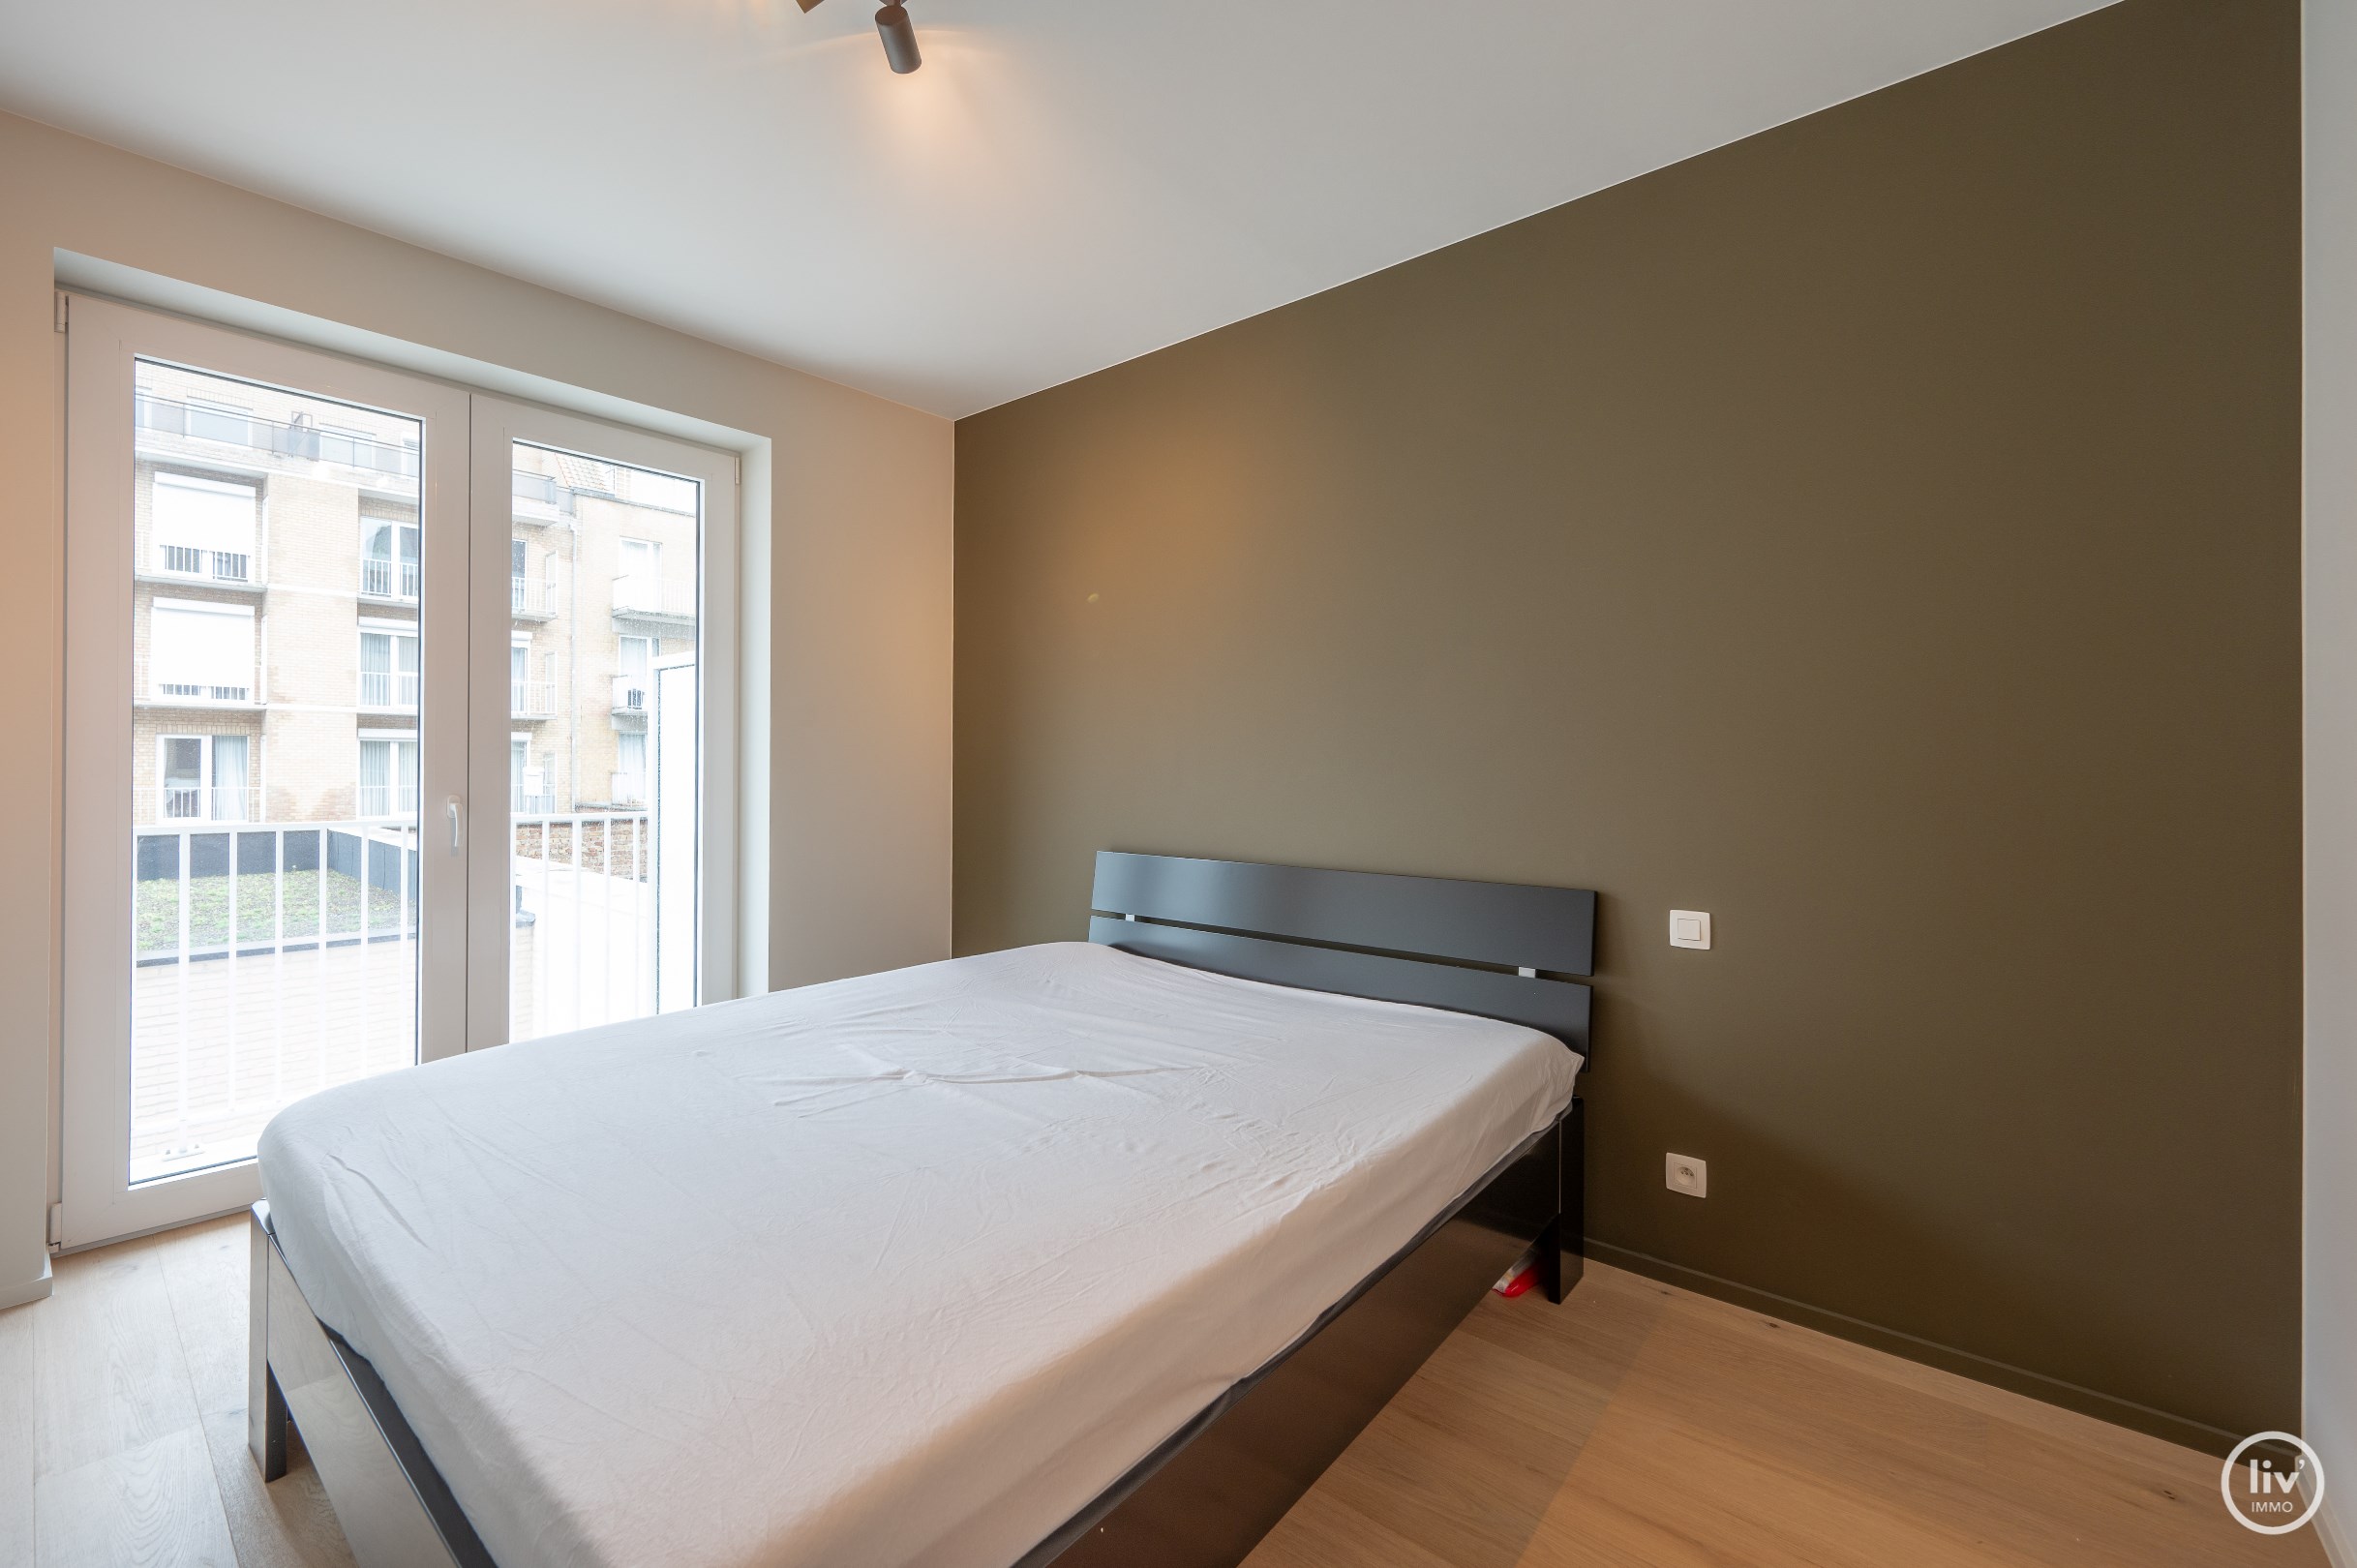 Uniek nieuwbouwappartement met 2 slaapkamers gelegen op een fantastische ligging in de Paul Parmentierlaan. 